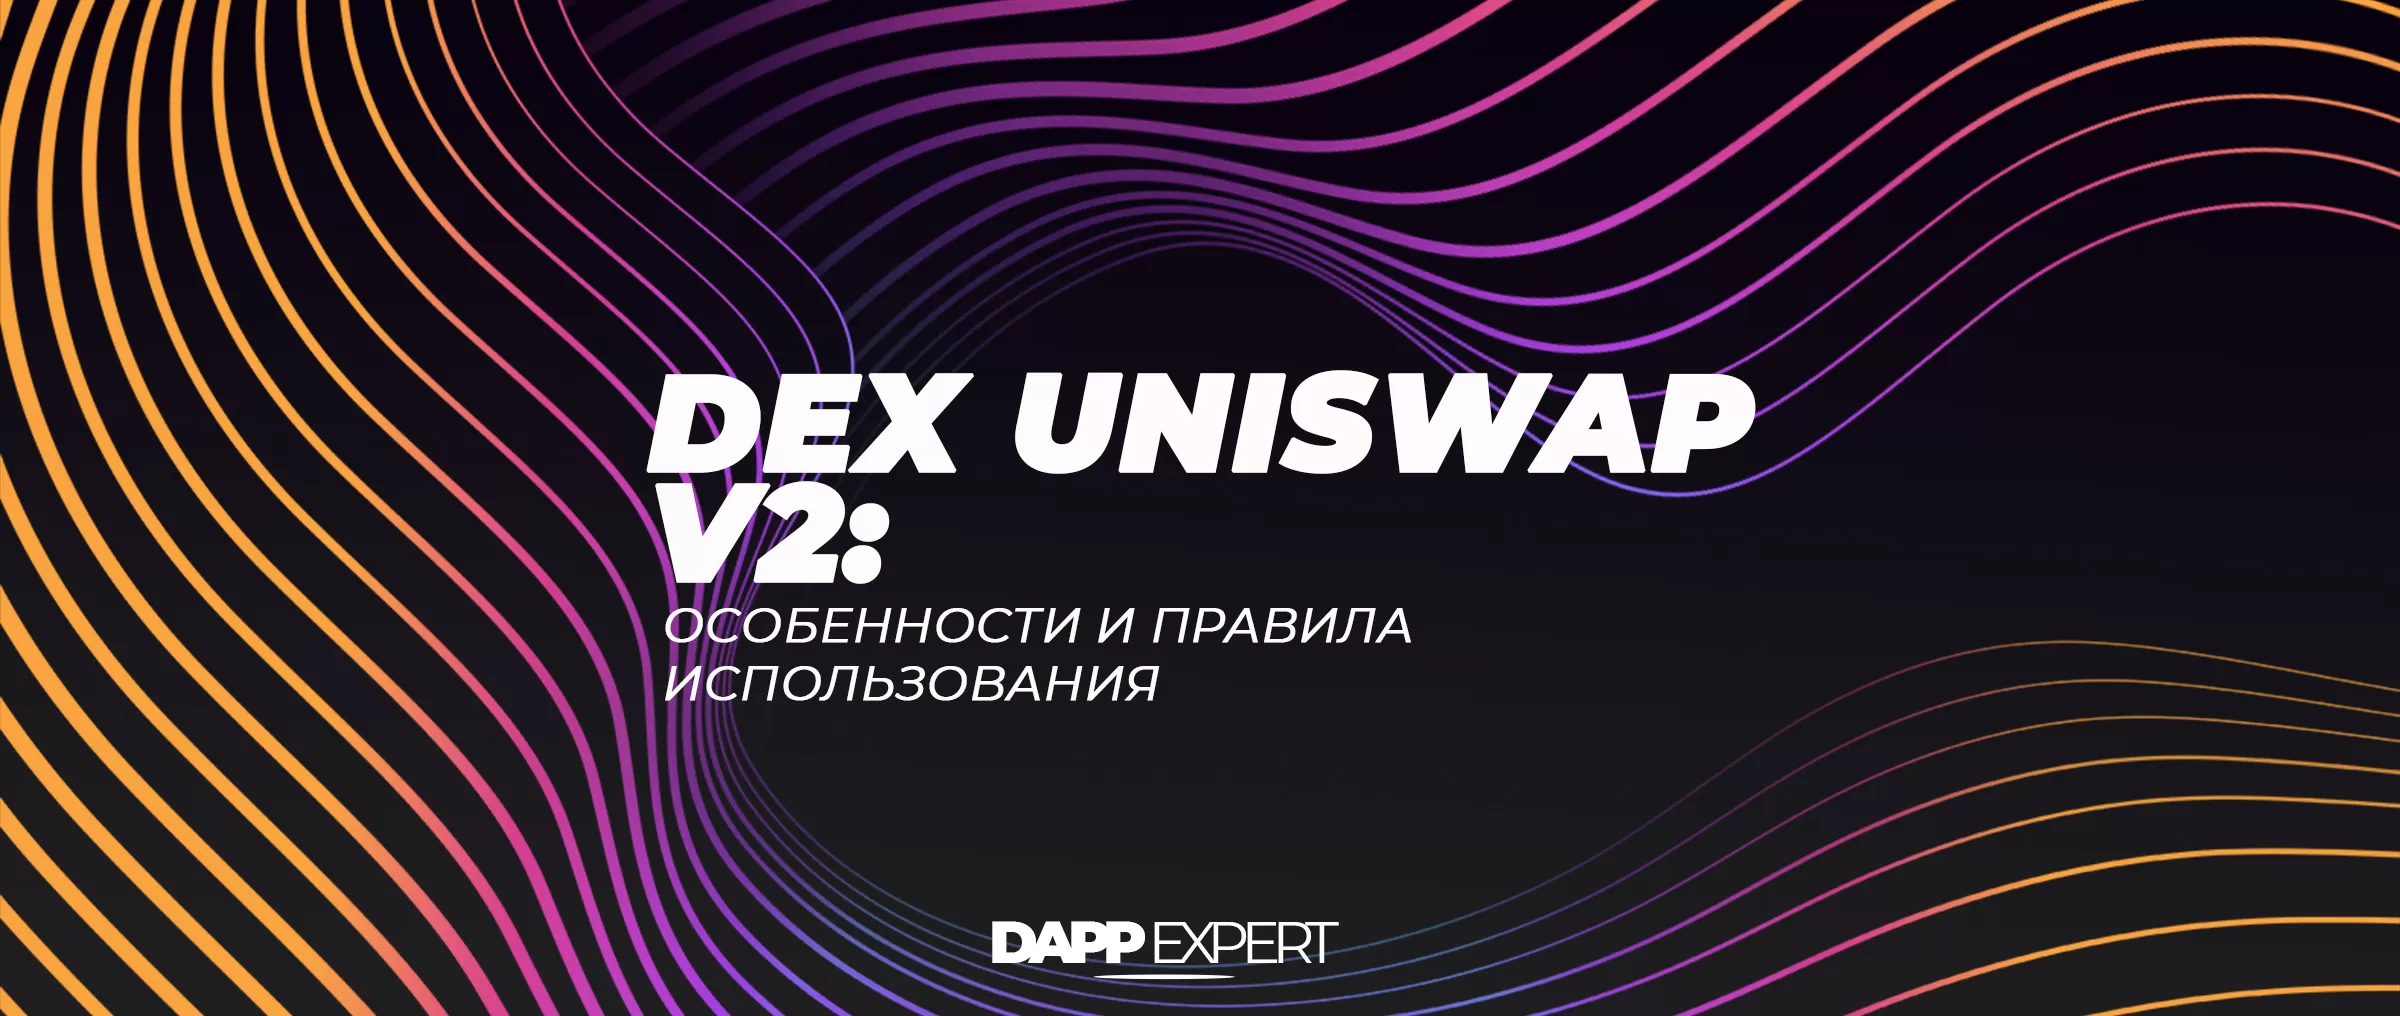 Dex Uniswap V2: особенности и правила использования